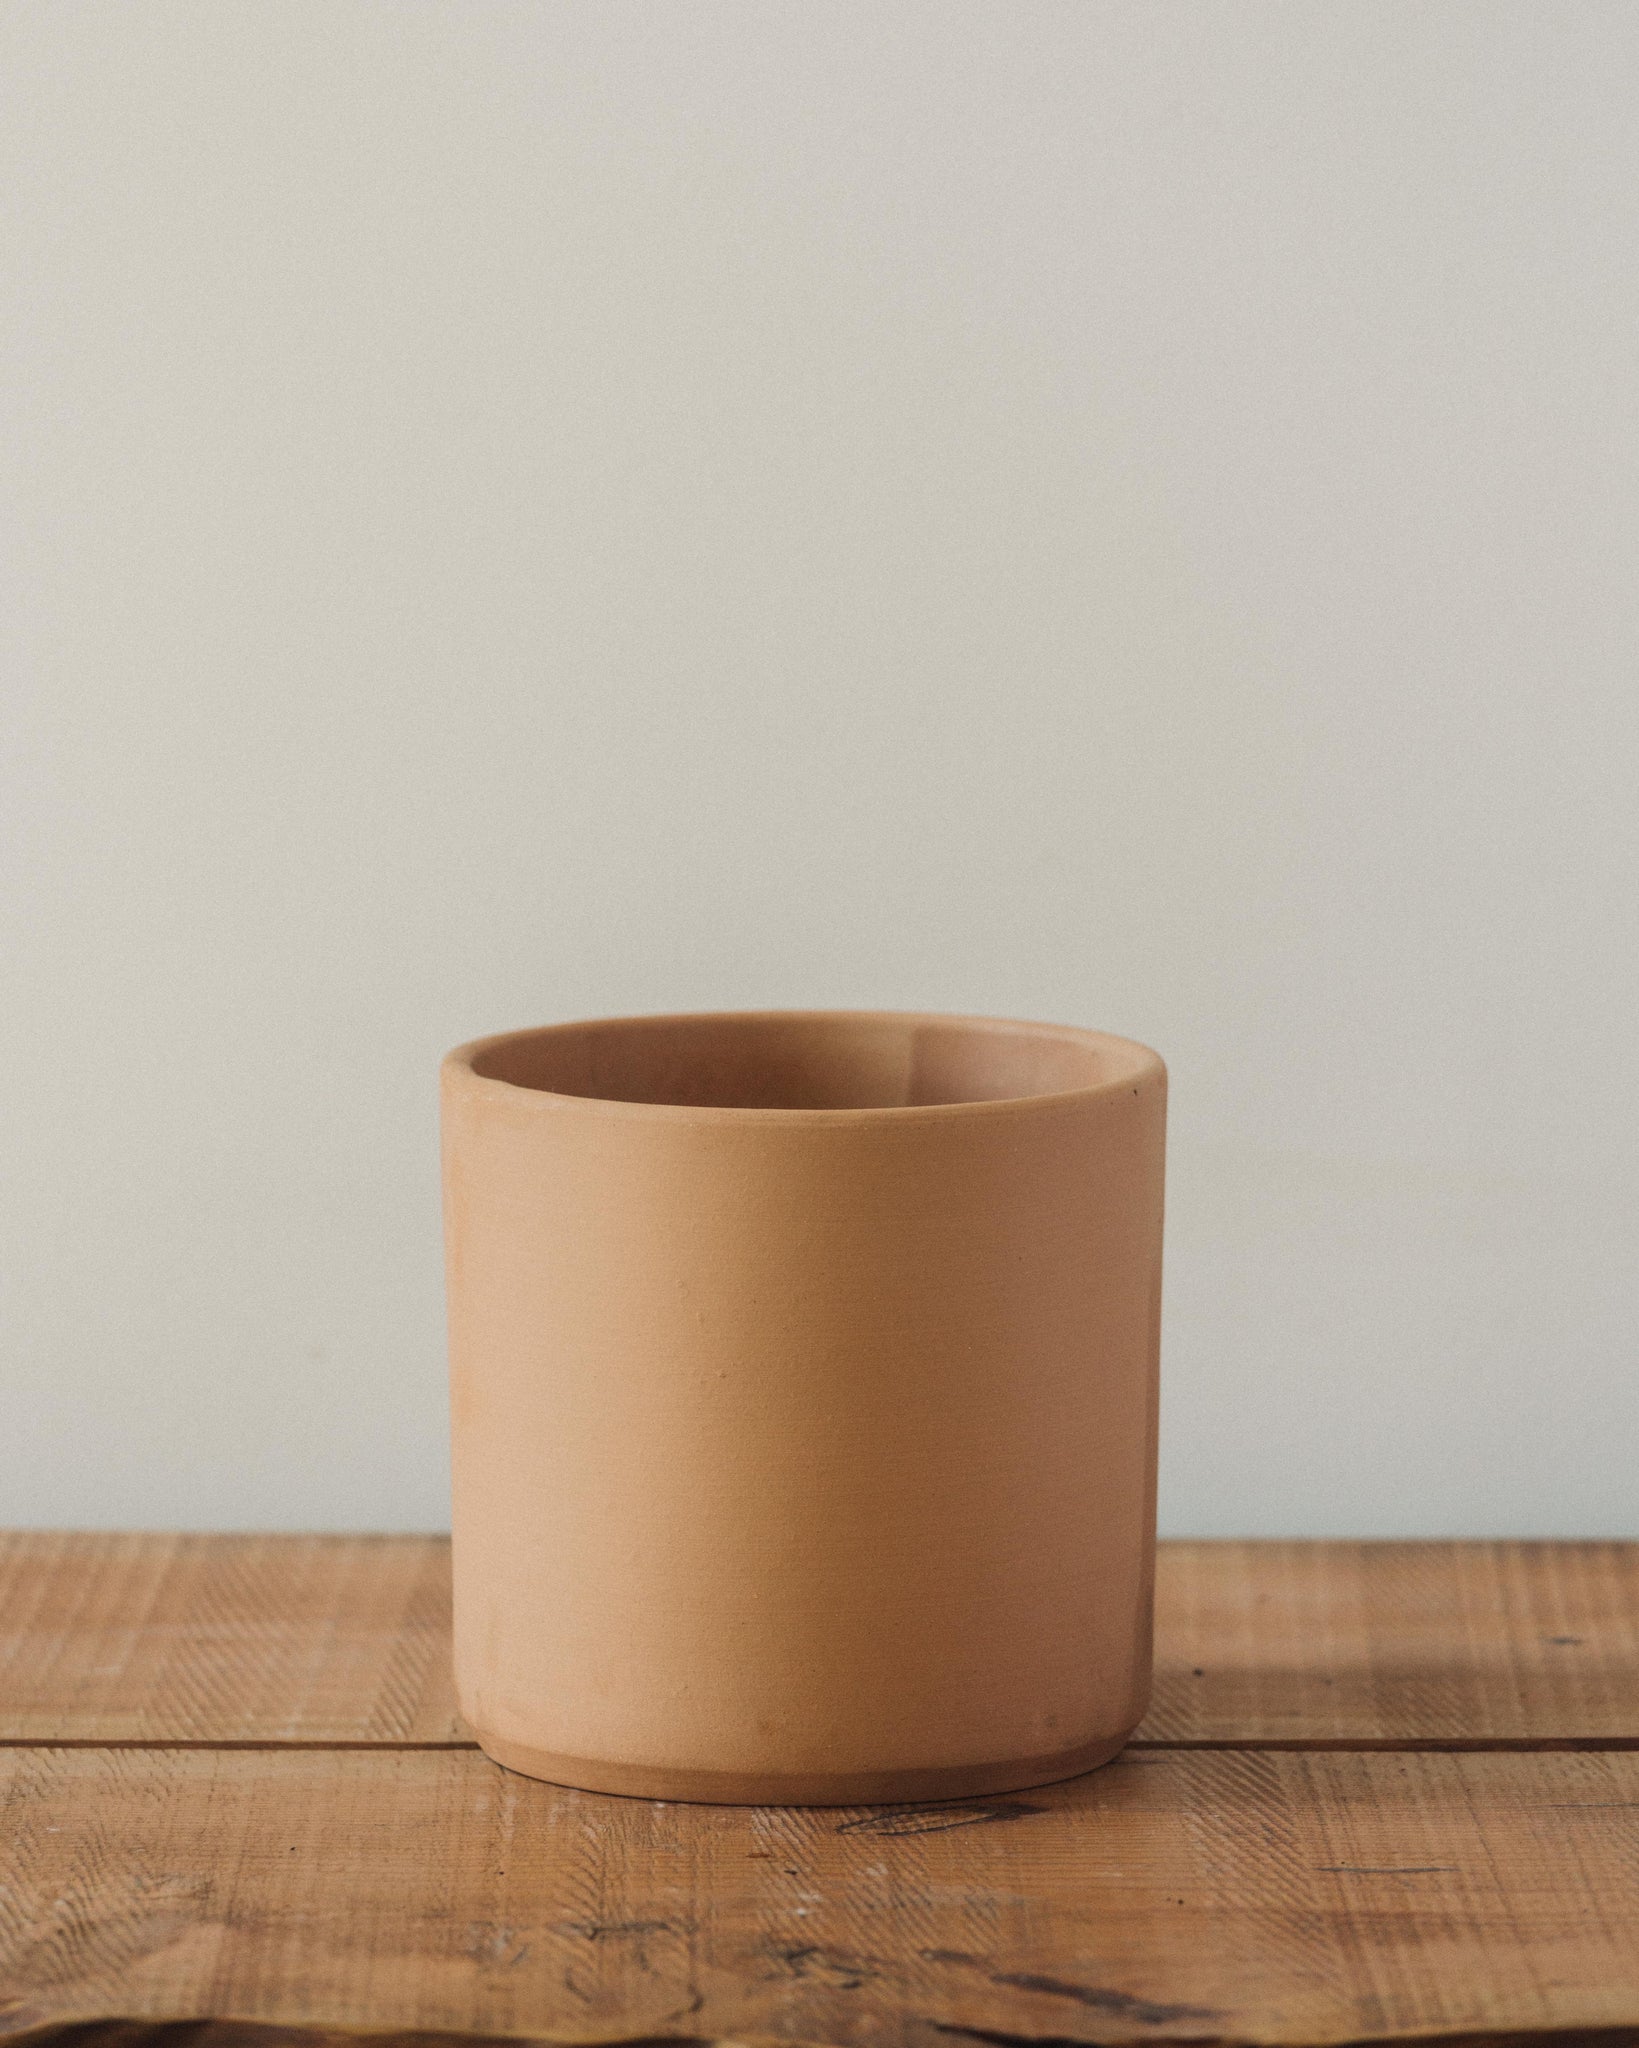 Modern Cylinder Pot, Buff Terra Cotta